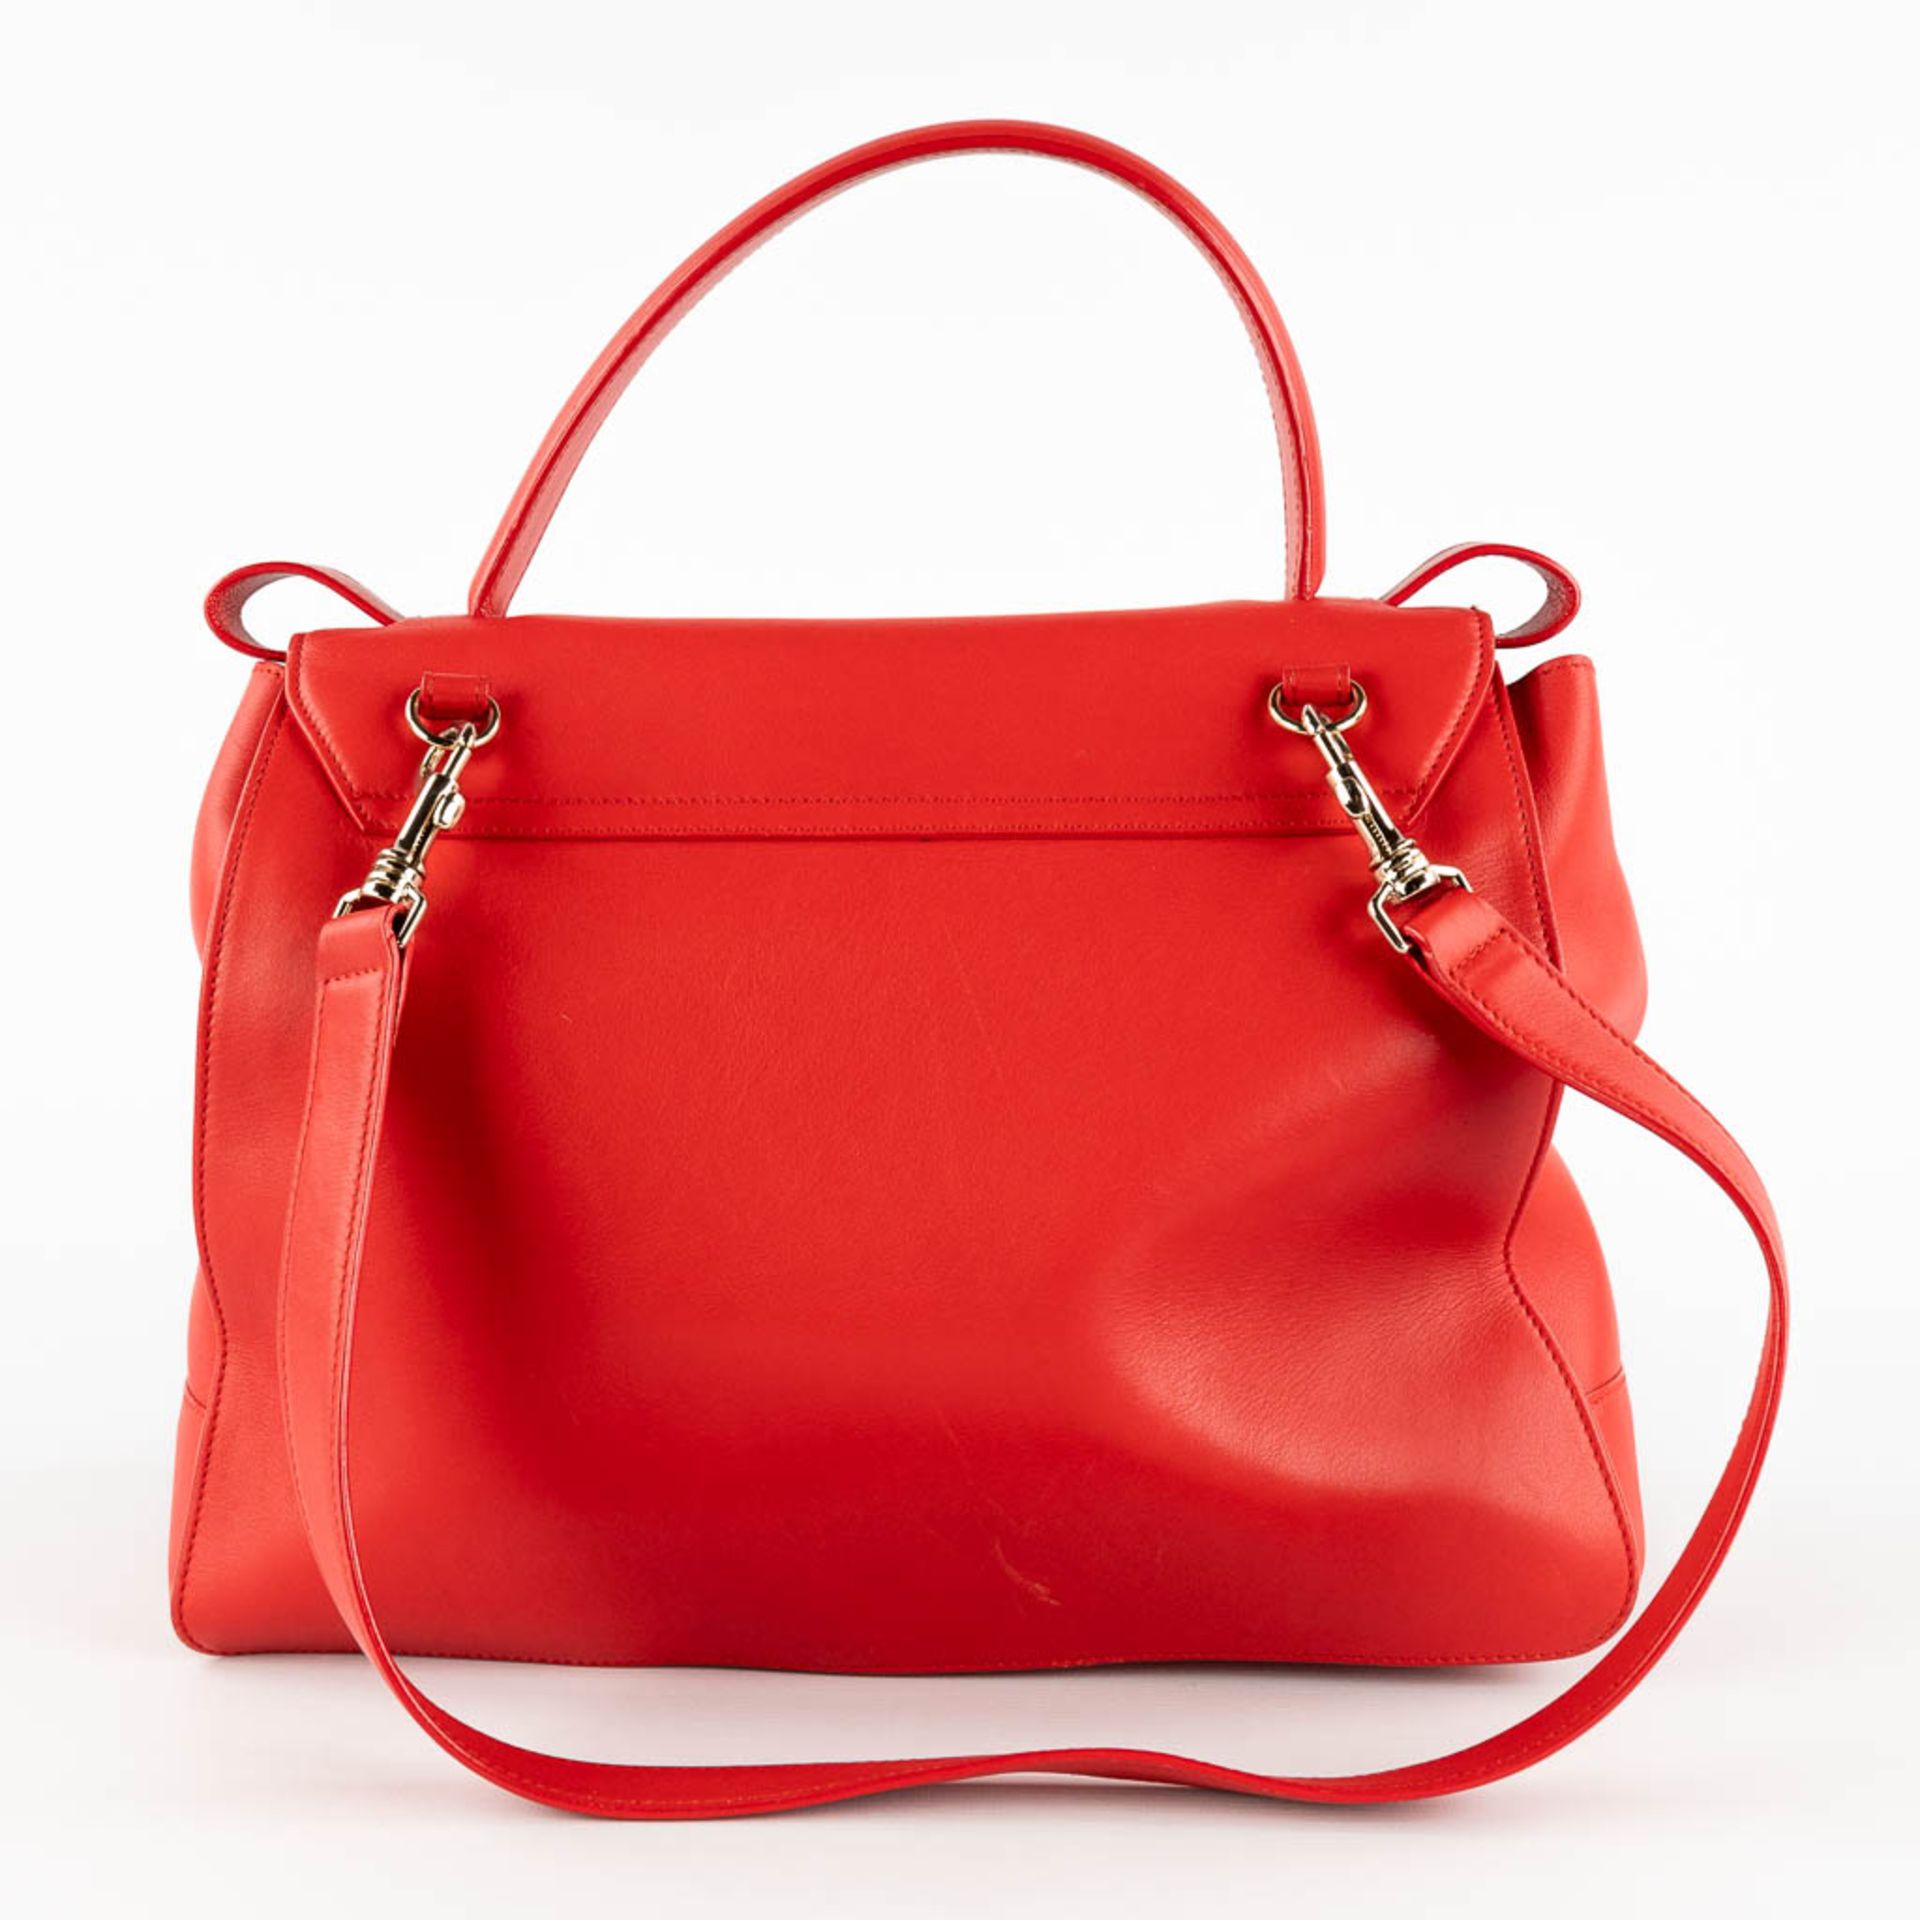 Escada, a handbag made of red leather. (W:33 x H:28 cm) - Image 5 of 17